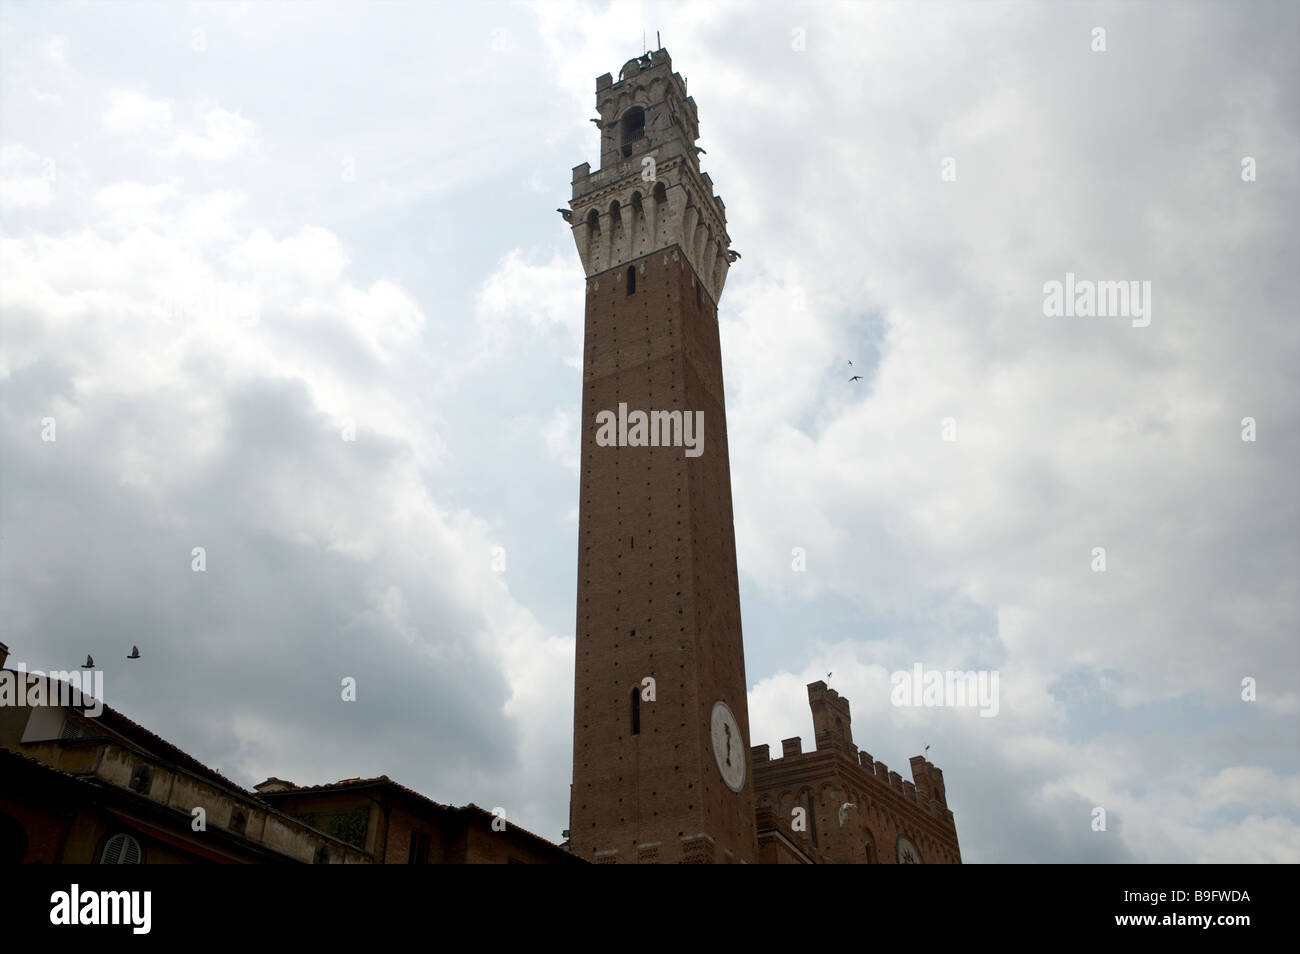 La torre principal de la Torres de Mangia en la plaza llamada Piazza Il Campo bajo un cielo gris en Siena Italia Foto de stock